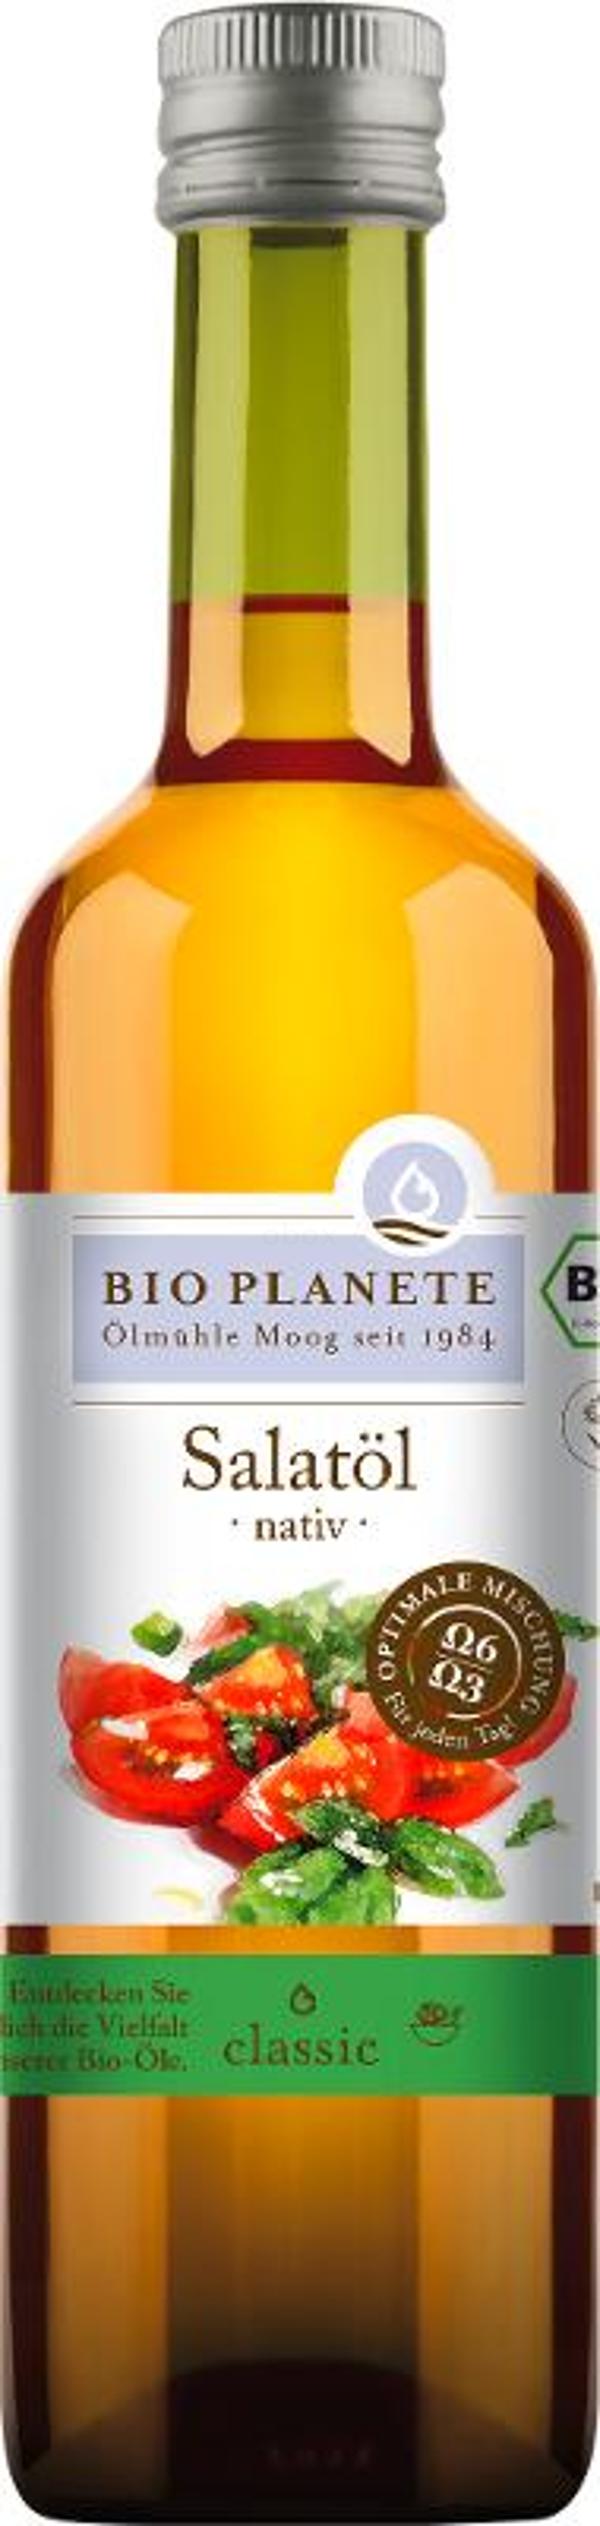 Produktfoto zu Salatöl nativ